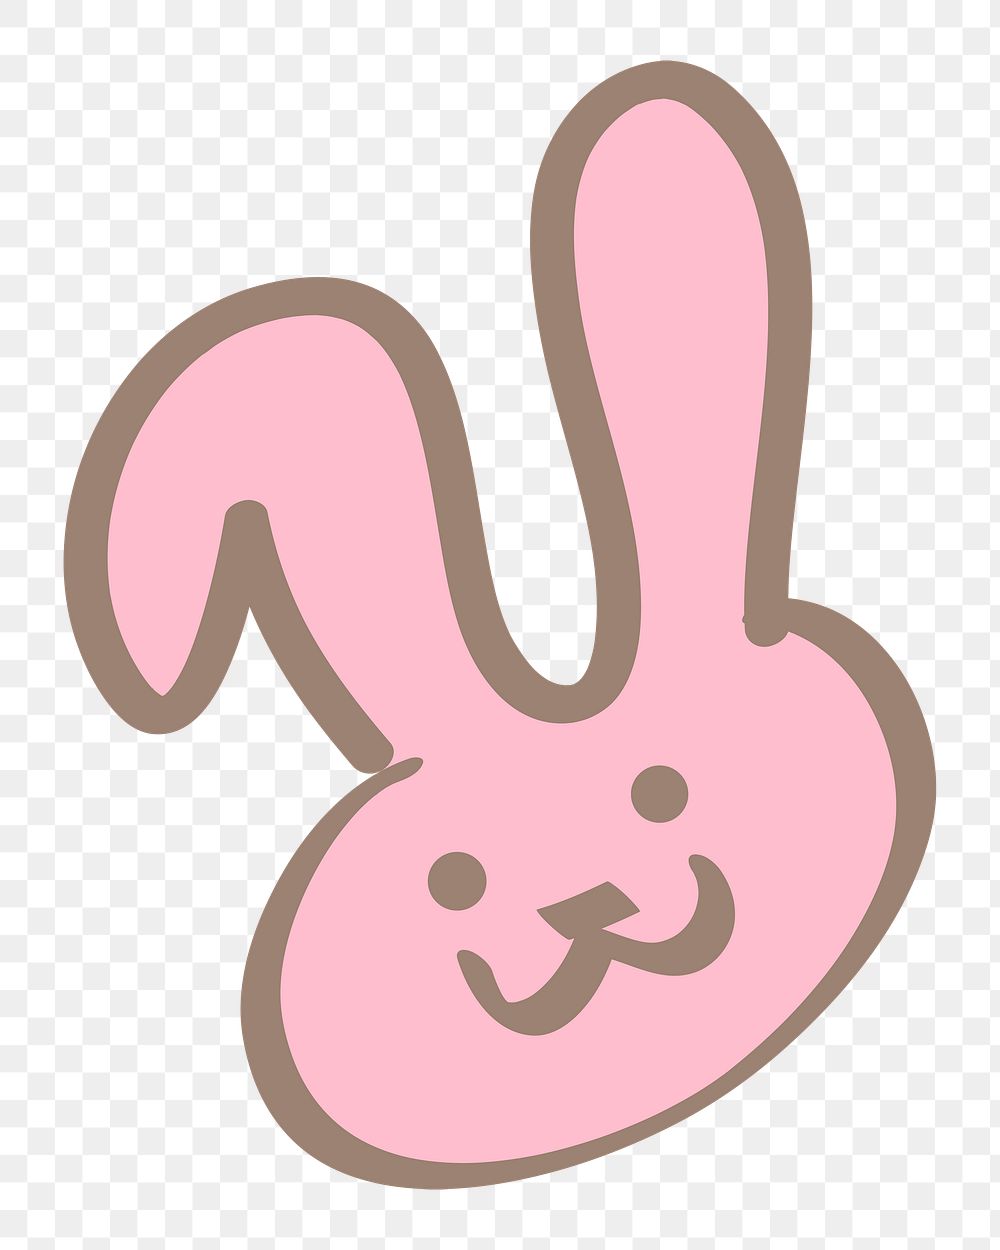 Easter bunny png sticker, festive doodle on transparent background